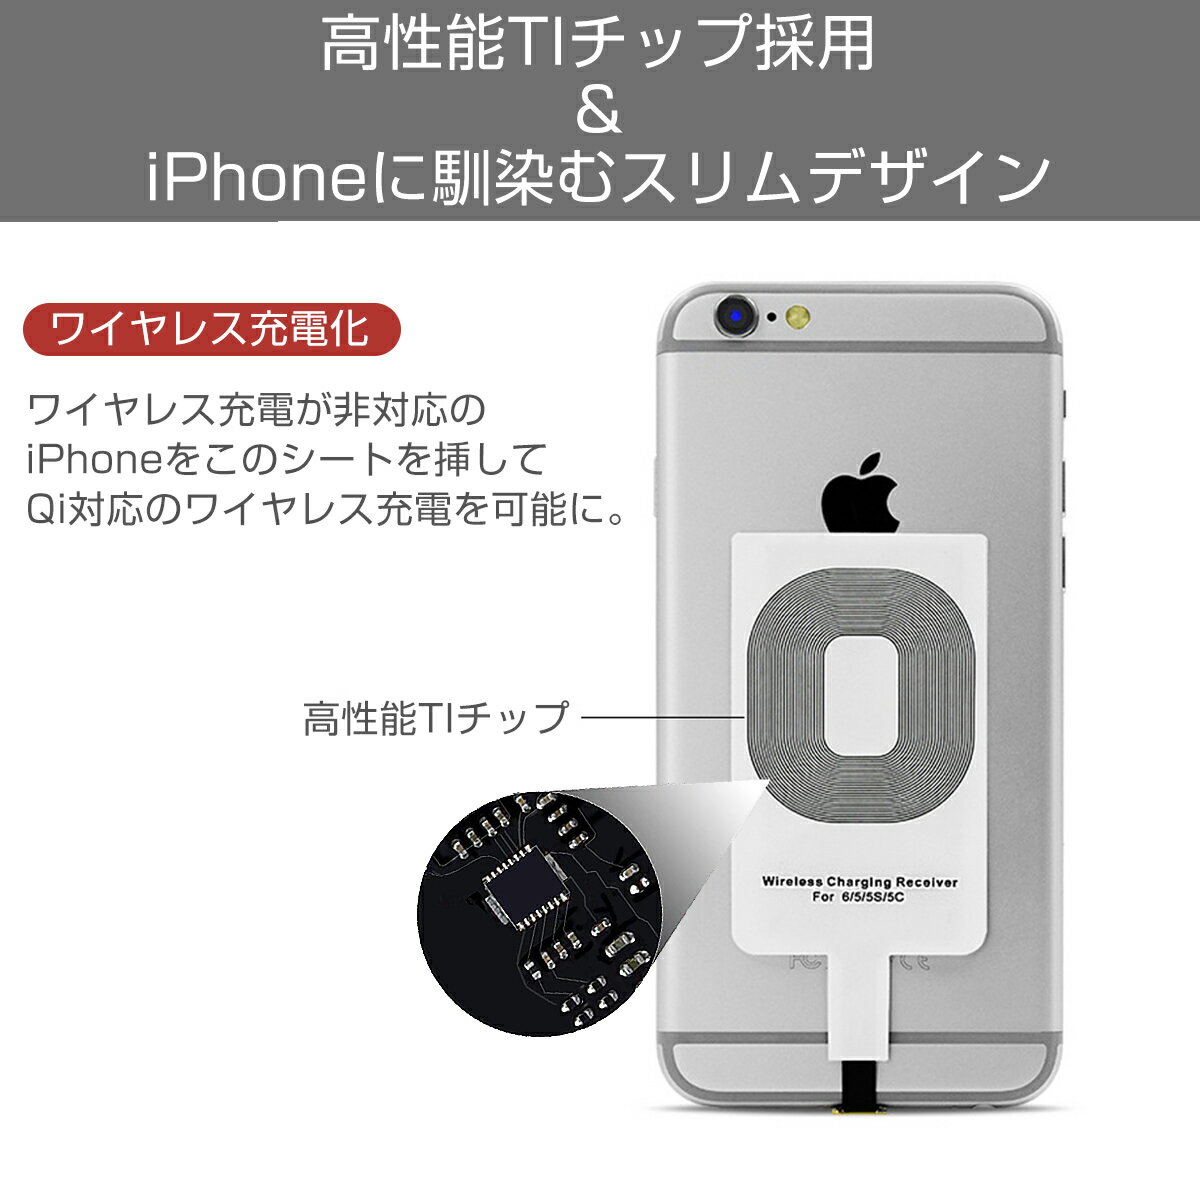 ワイヤレス充電レシーバー ワイヤレス充電化 Qi 拡張 スマホ iPhone用 iPhone 7/7 Plus/6/6 Plus/5/5s/5c対応 1ヶ月保証